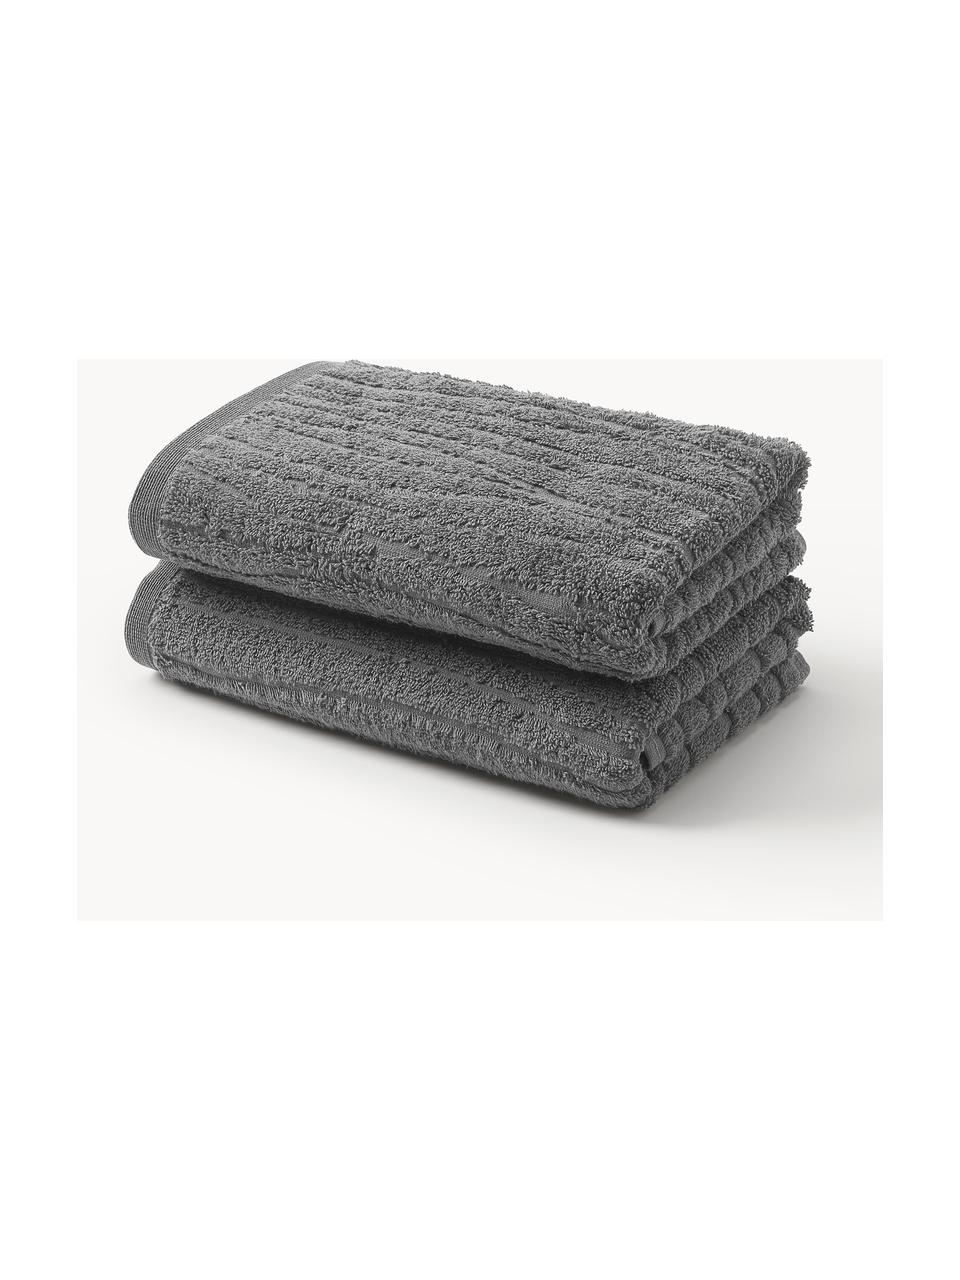 Ręcznik z bawełny Audrina, różne rozmiary, Ciemny szary, Ręcznik kąpielowy, S 70 x D 140 cm